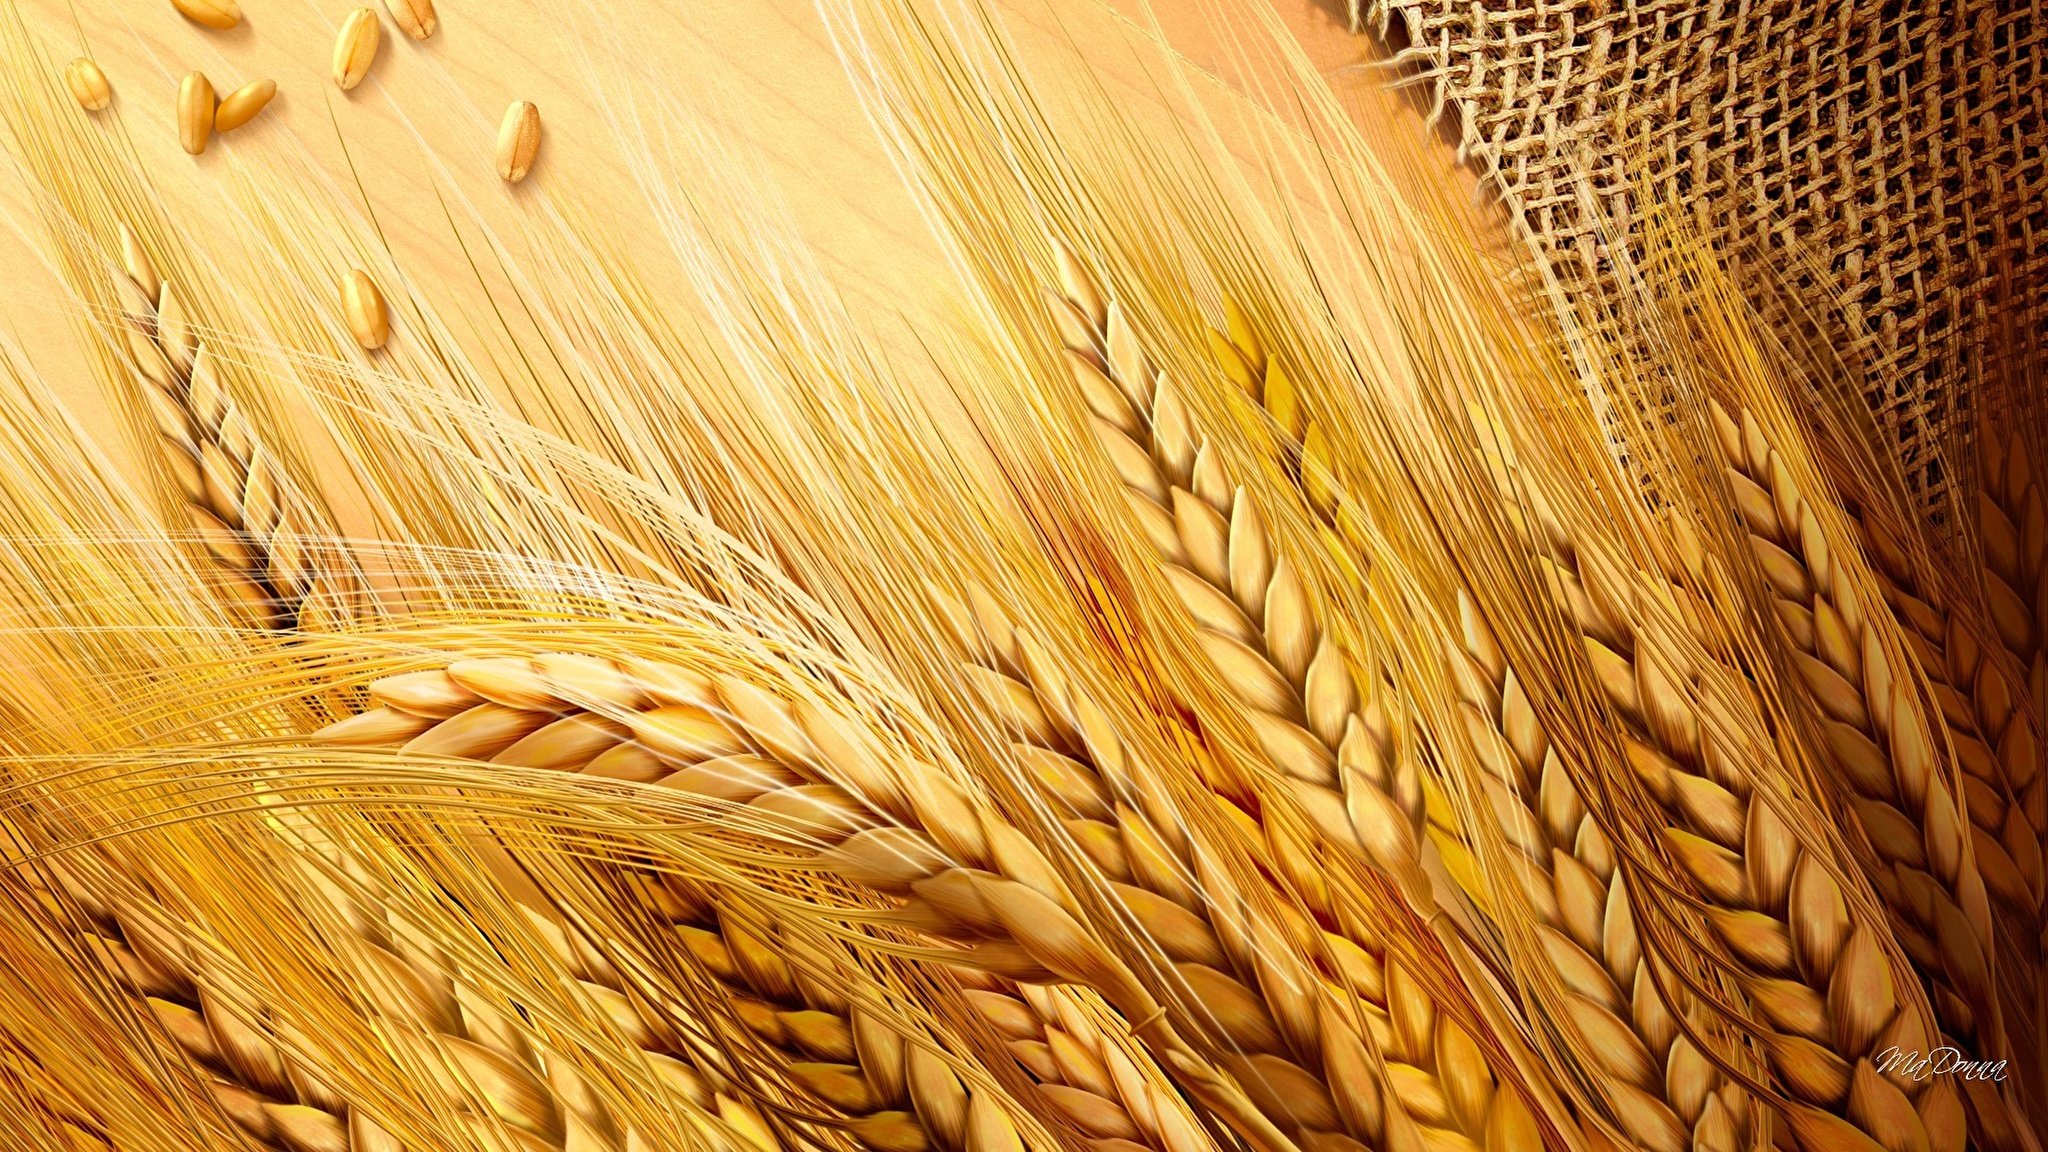 Хлеба зерновые культуры